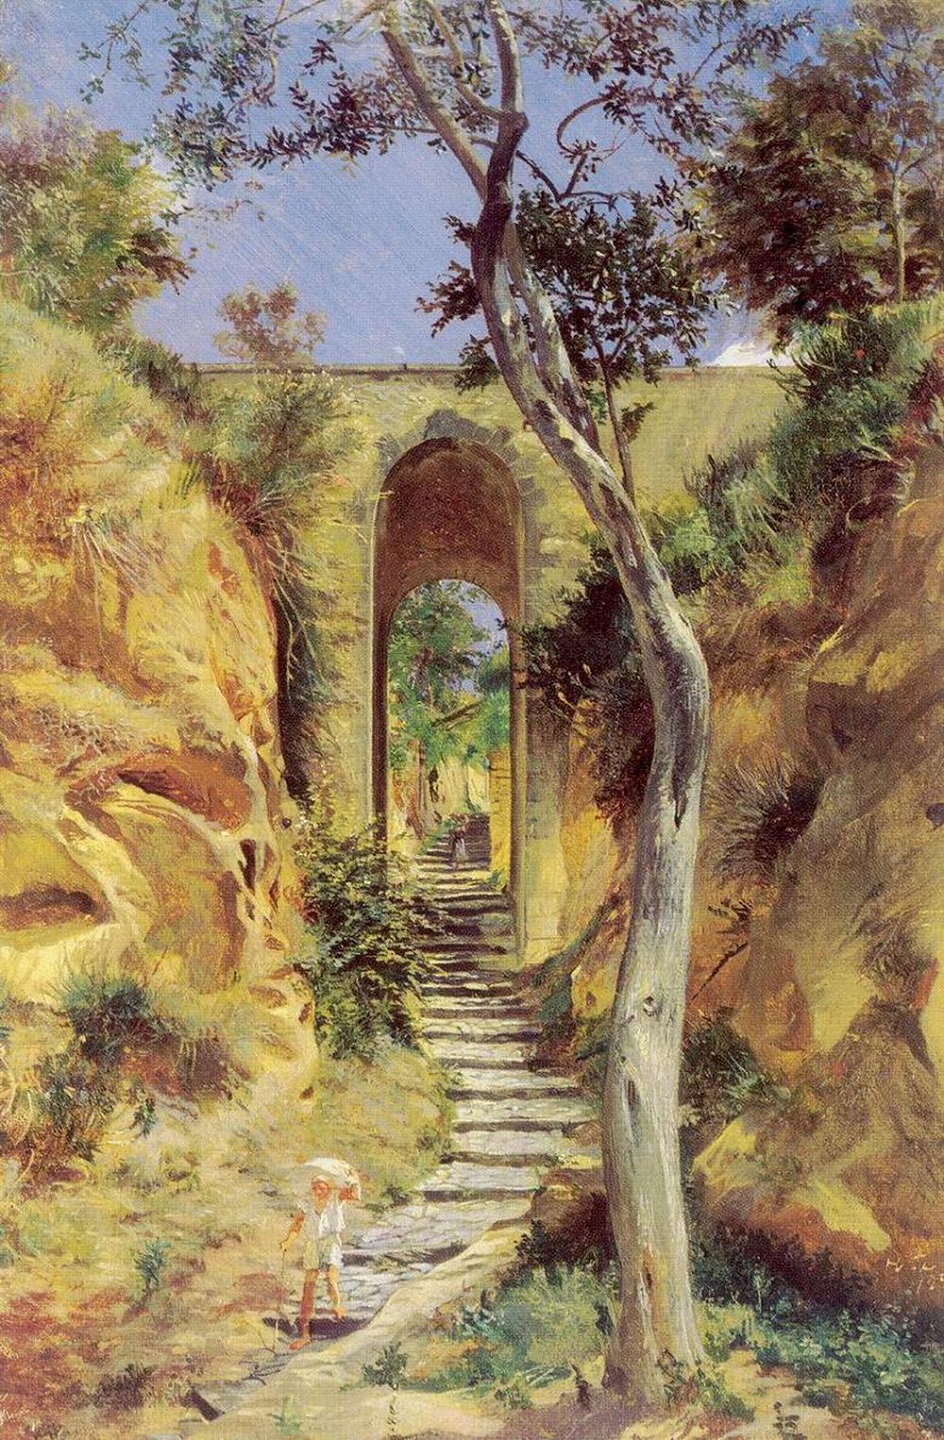 Николай Ге. Картина «Мост в Вико», 1858